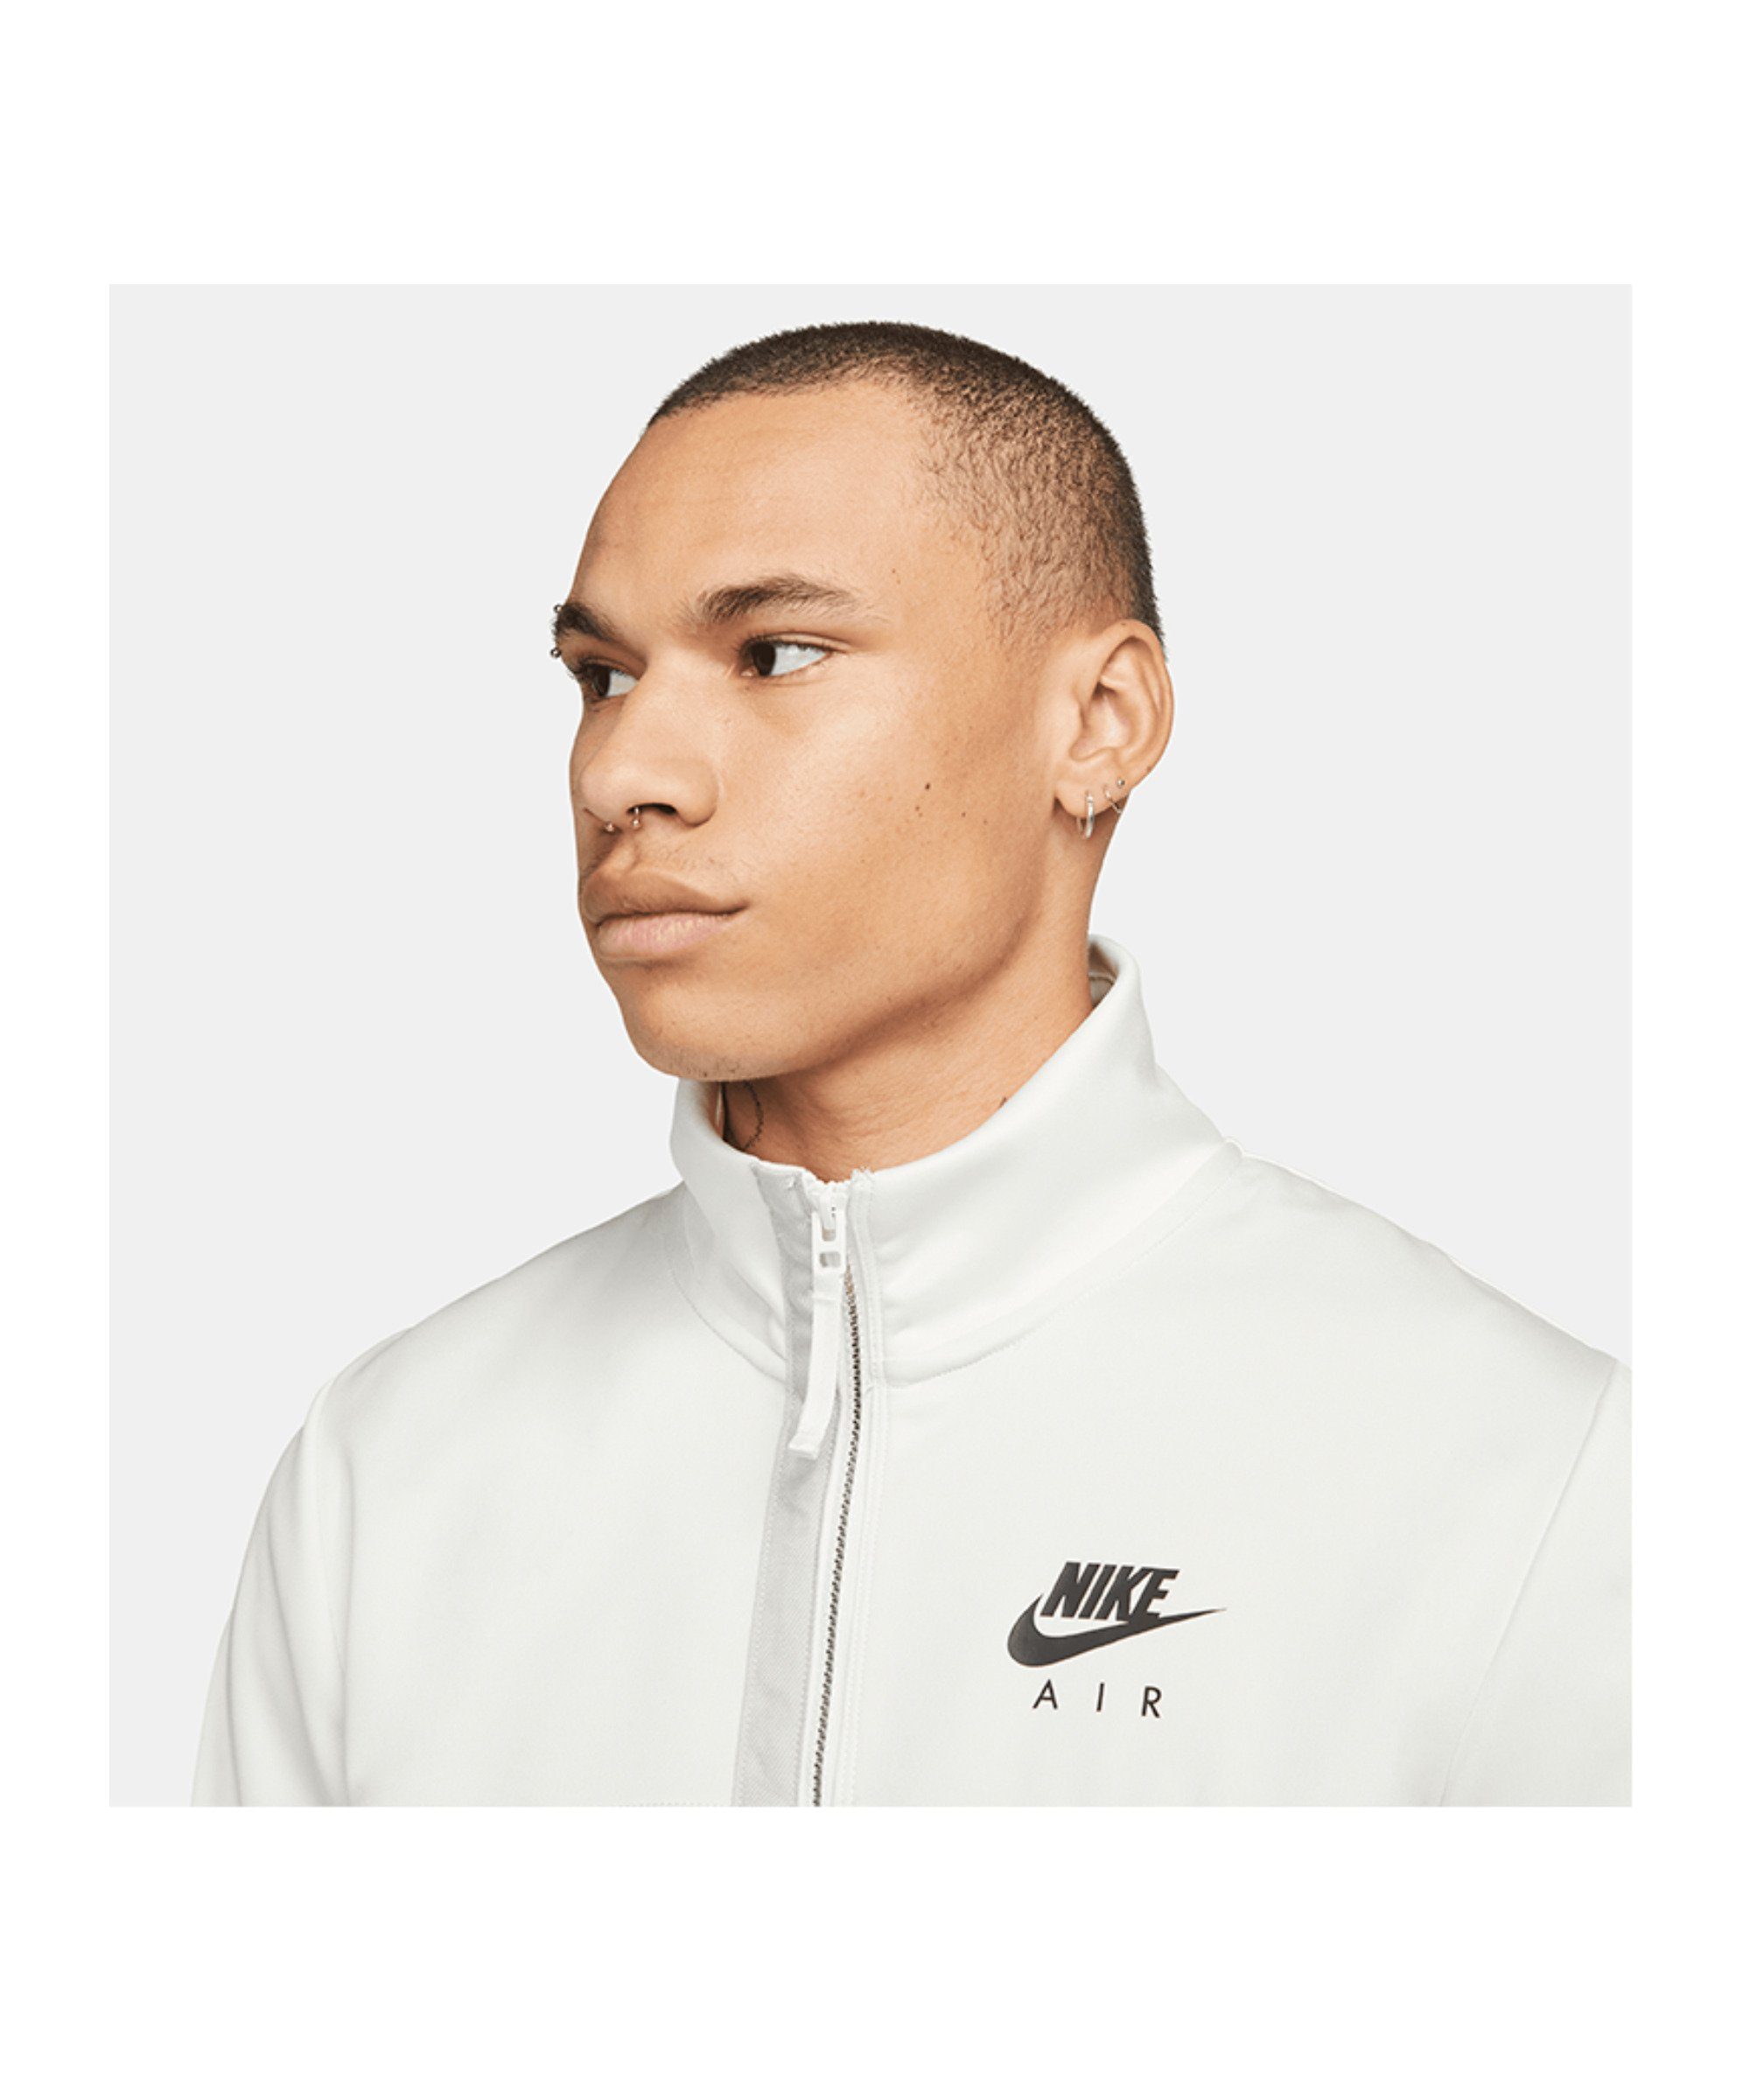 Nike Sportswear Sweatjacke Air Jacke weissschwarz